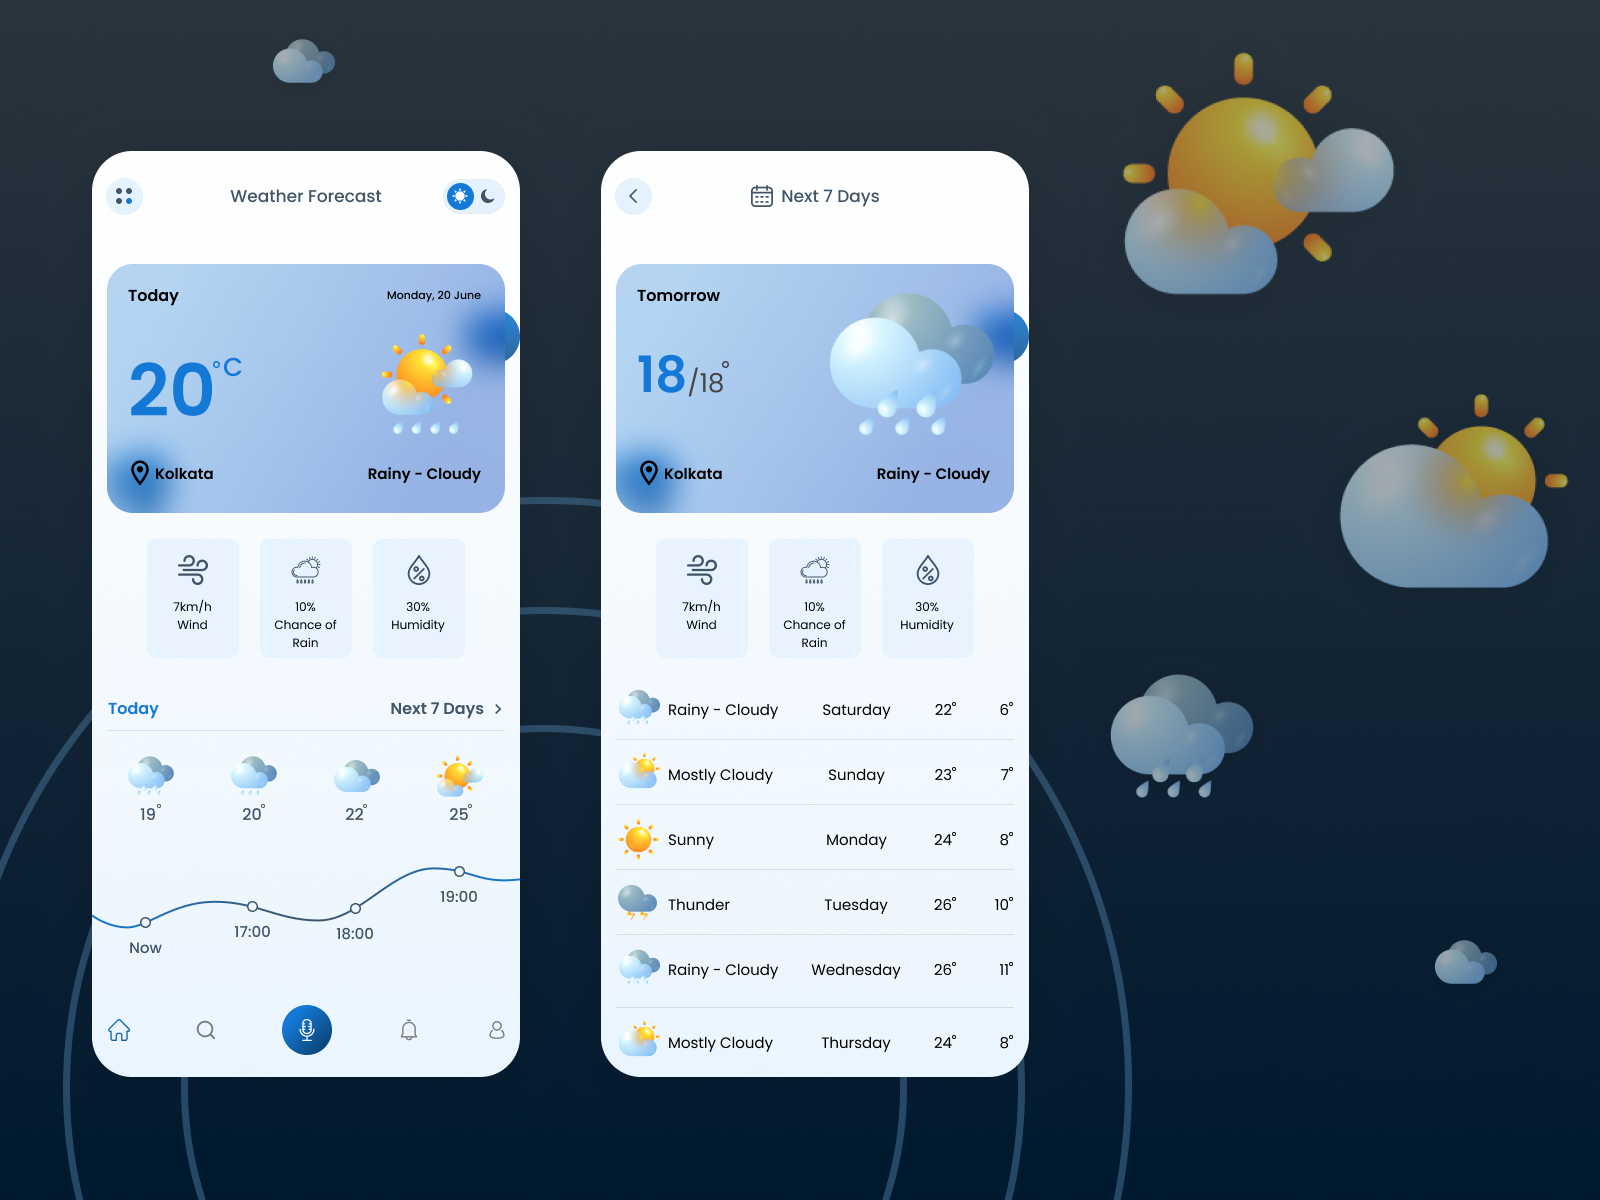 weather-app-light-version-by-rajesh-mandaviya-on-dribbble